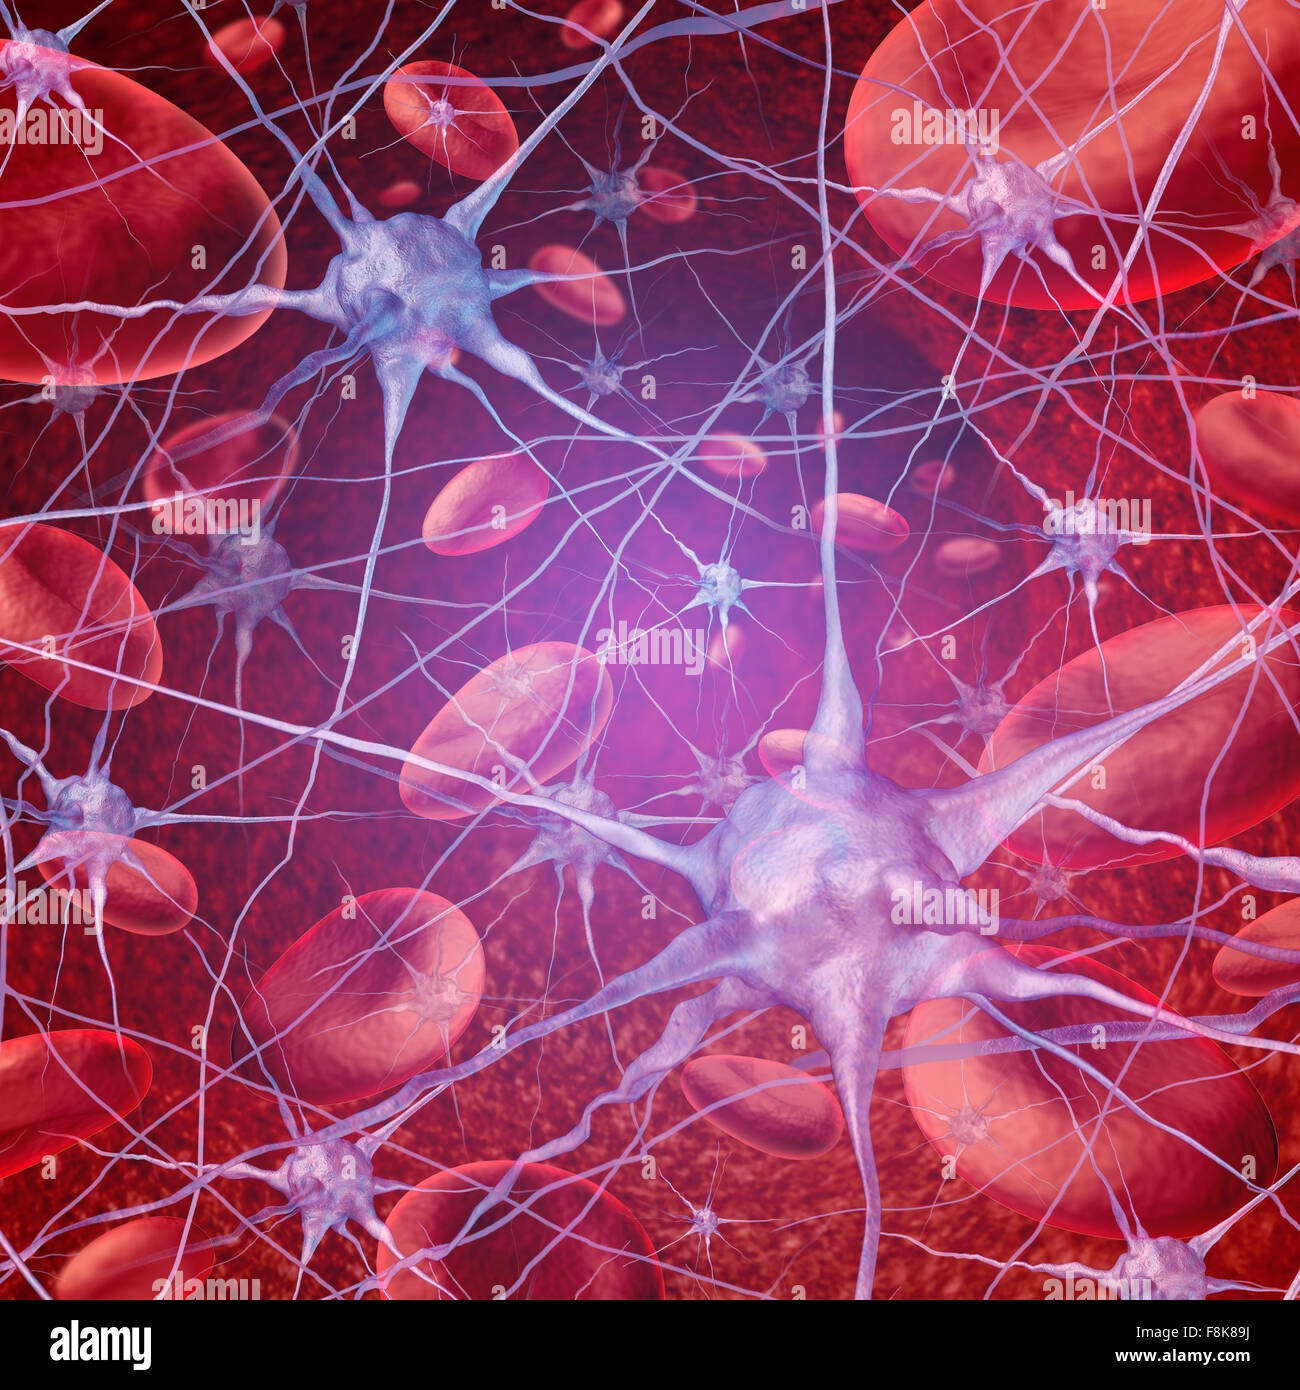 Le débit sanguin du cerveau neurone comme circulation avec les cellules circulant dans les veines et les droits de l'appareil circulatoire qui représente un symbole de la santé relatives à l'AVC ou la neurologie. Banque D'Images